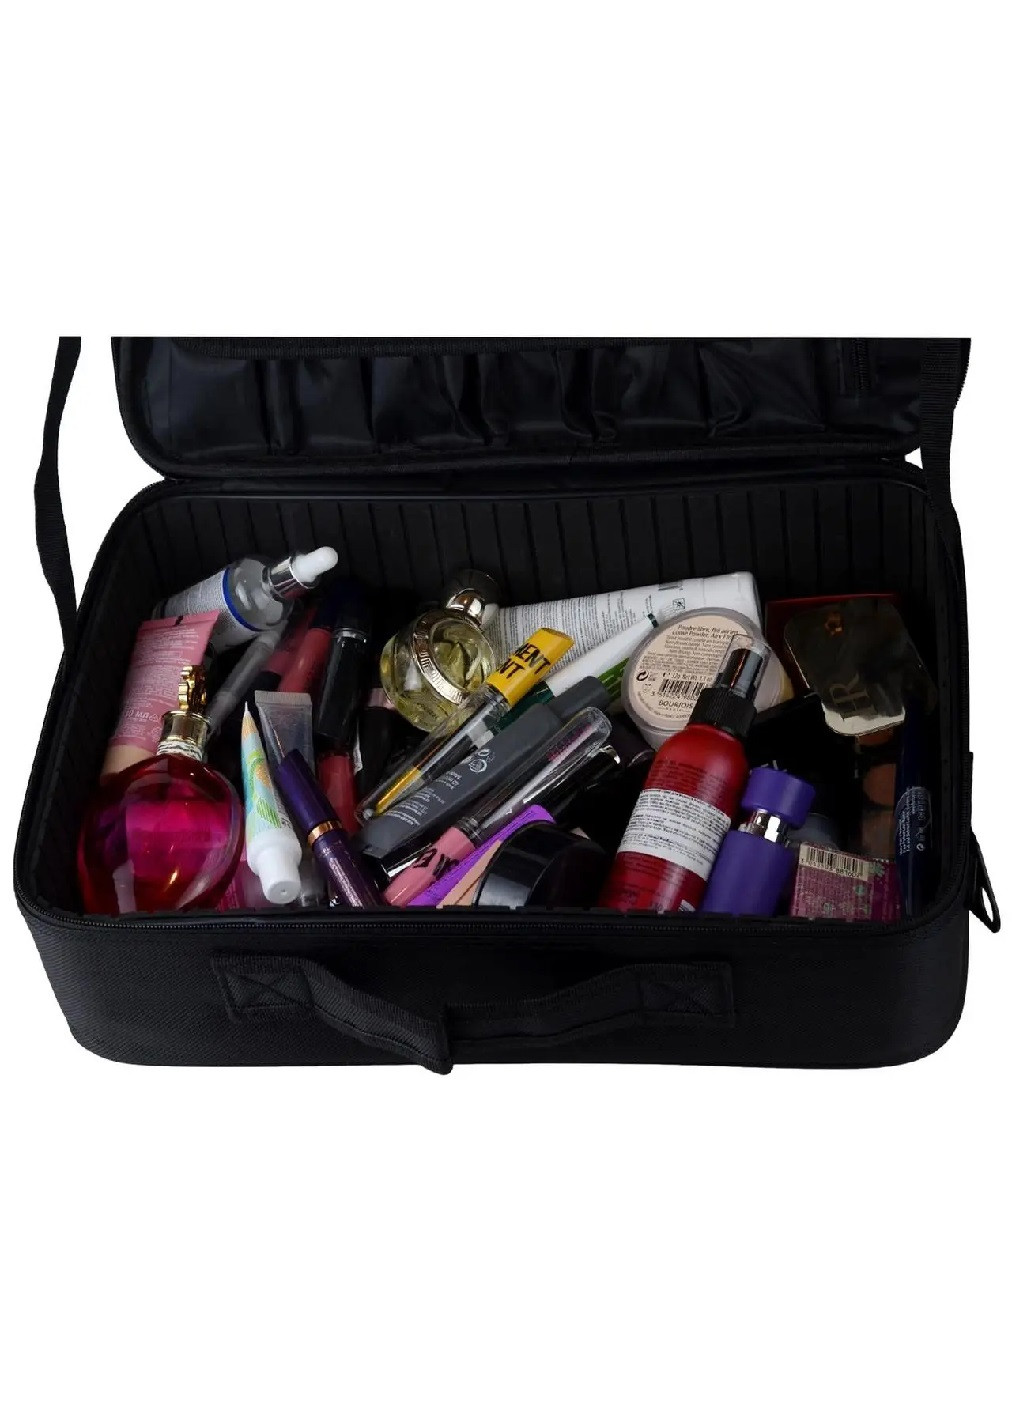 Органайзер бокс бьюти кейс косметичка чемоданчик сумка для хранения косметики и аксессуаров 40х28х13 см (474701-Prob) Черный Unbranded (259443741)